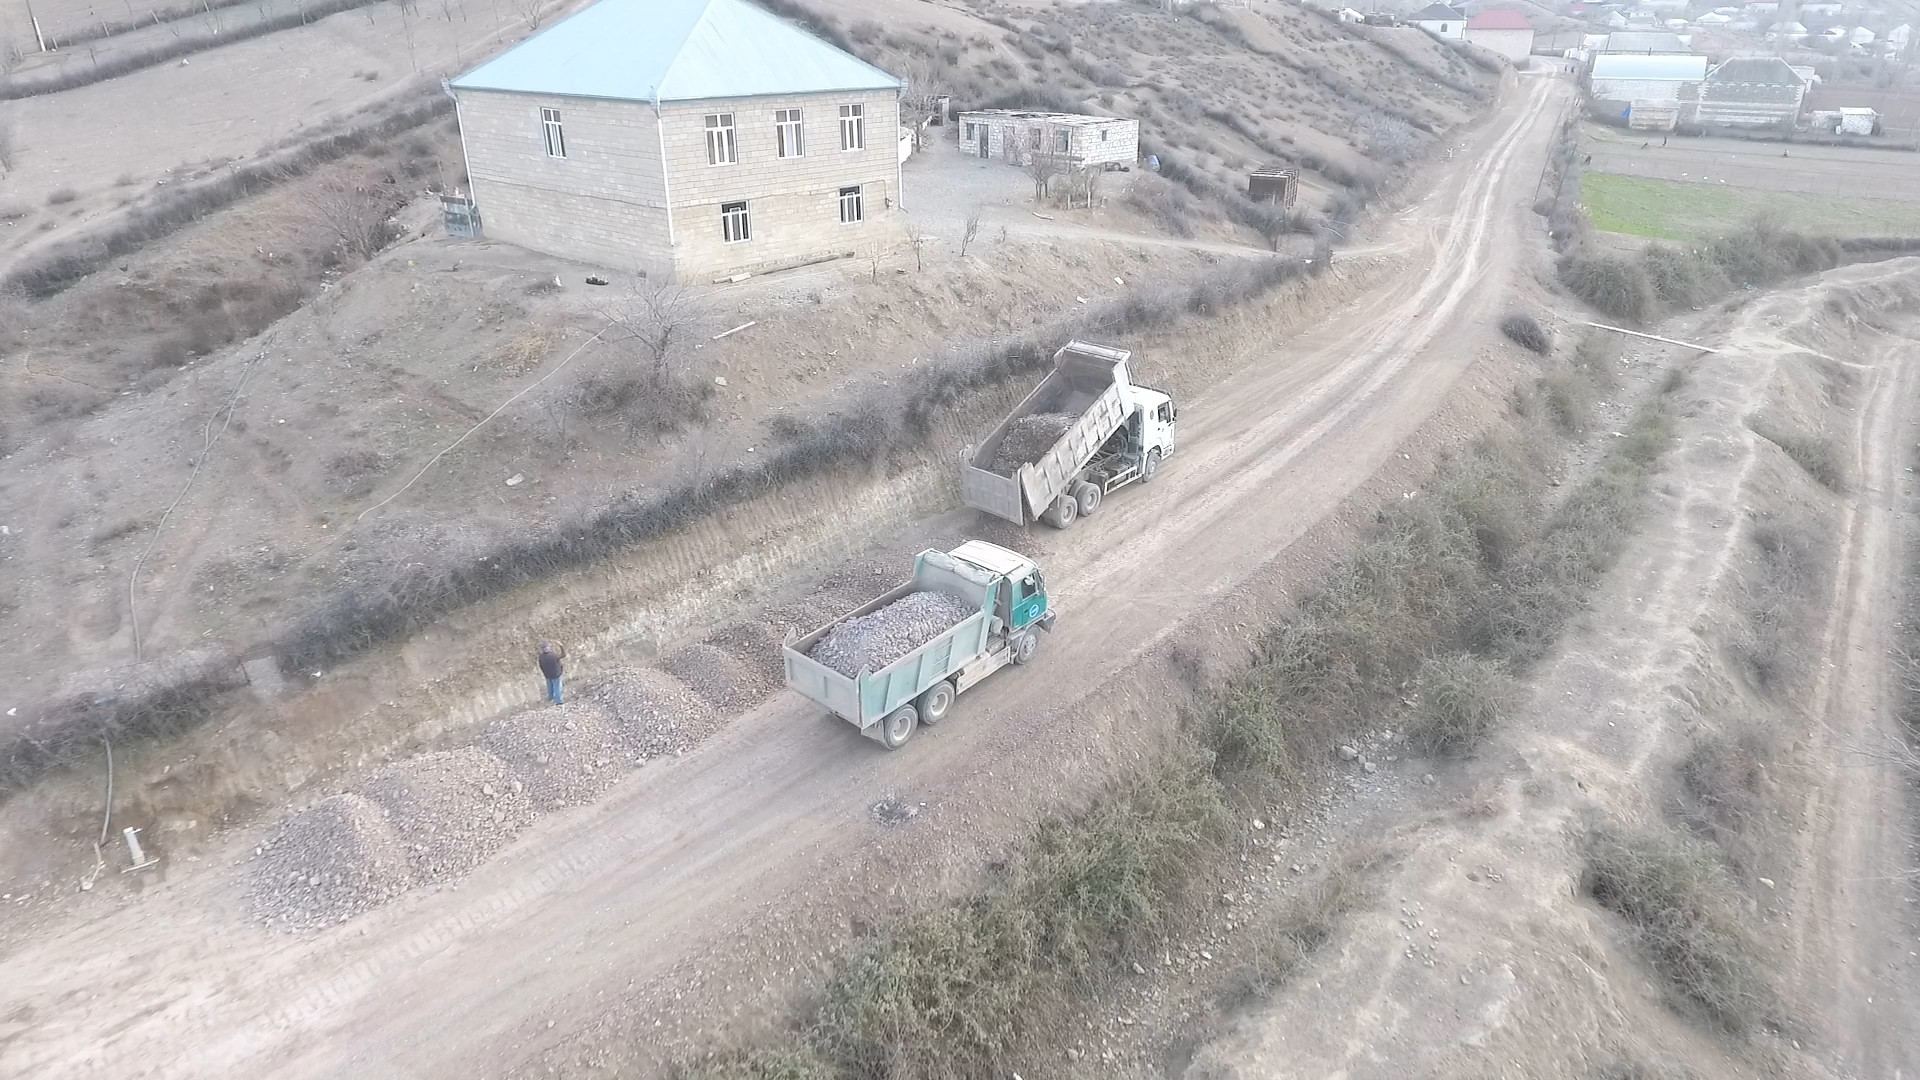 Şəmkirin Zəyəm Cırdaxan-Tatarlı avtomobil yolu yenidən qurulur (FOTO)